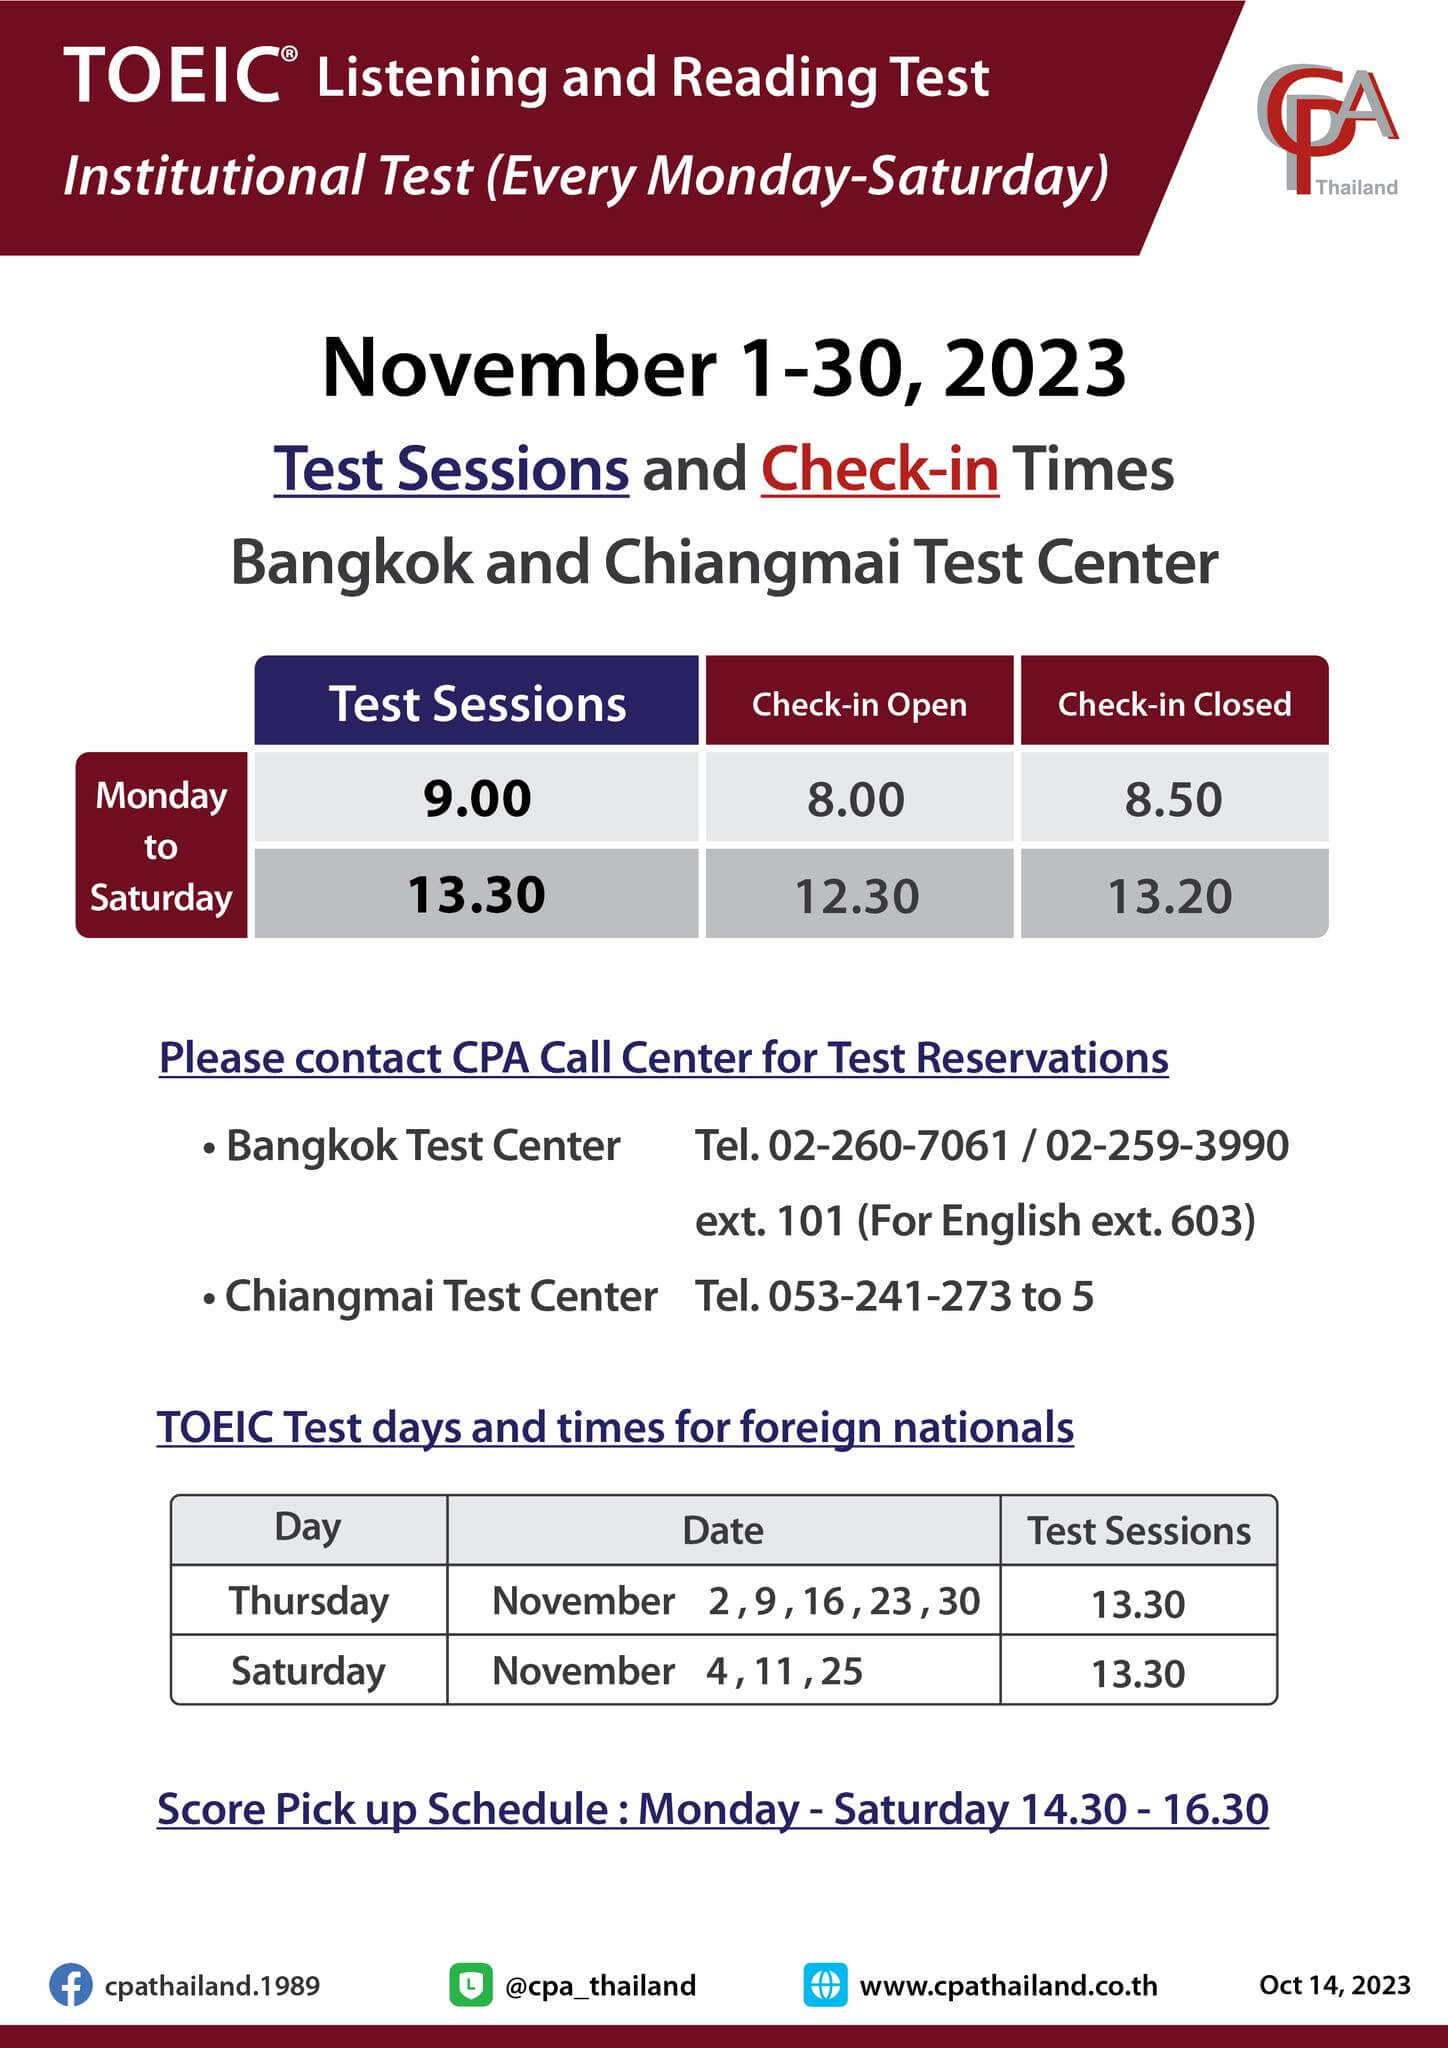 ตารางสอบ toeic กรุงเทพ เชียงใหม่ พฤศจิกายน 2566 ศูยน์สอบ CPA Thailand - เตรียมพร้อมก่อนสอบ ติว TOEIC การันตีคะแนน สถาบันสอนภาษาอังกฤษ EduFirst